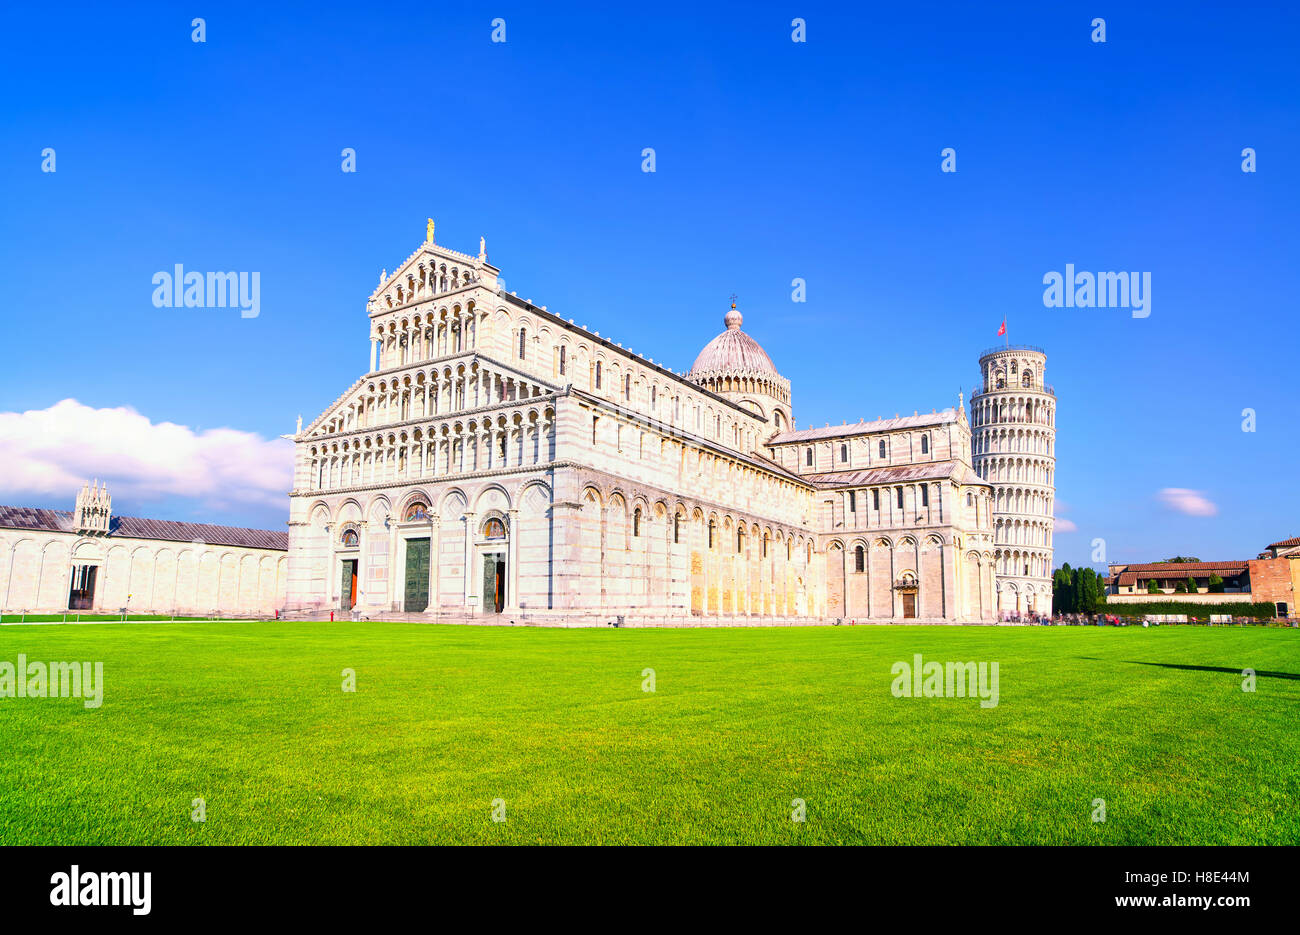 Pisa, Piazza dei Miracoli vista. Il Duomo e la Torre Pendente di Pisa. Unesco - Sito Patrimonio dell'umanità. Toscana, Italia, Europa. Foto Stock